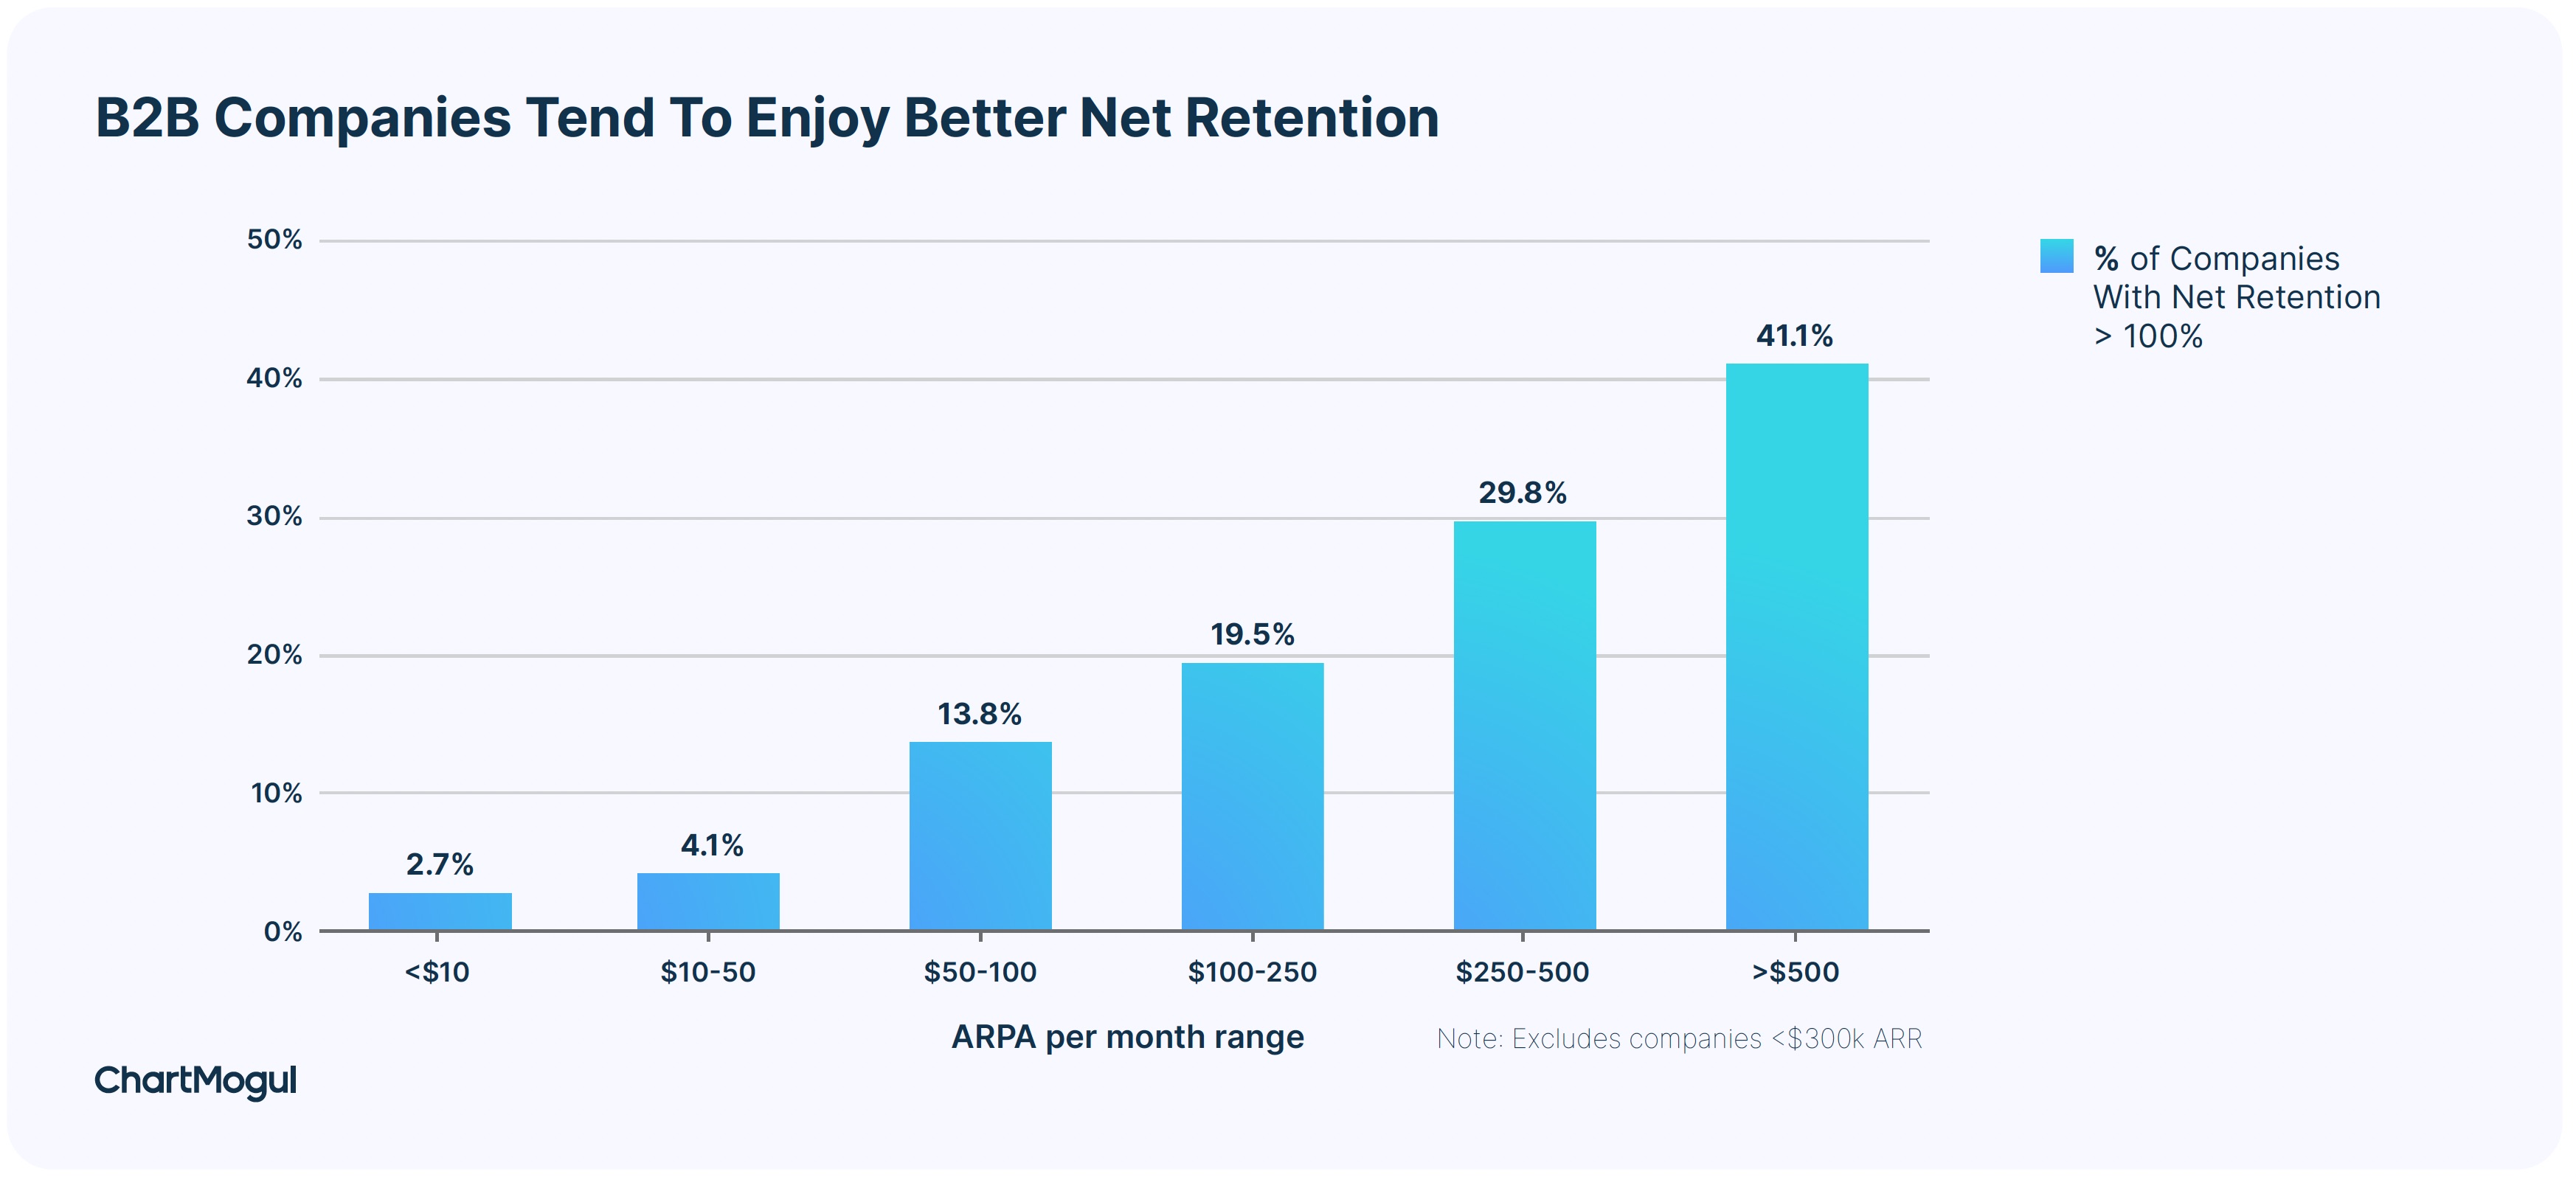 B2B companies tend to enjoy better net retention.